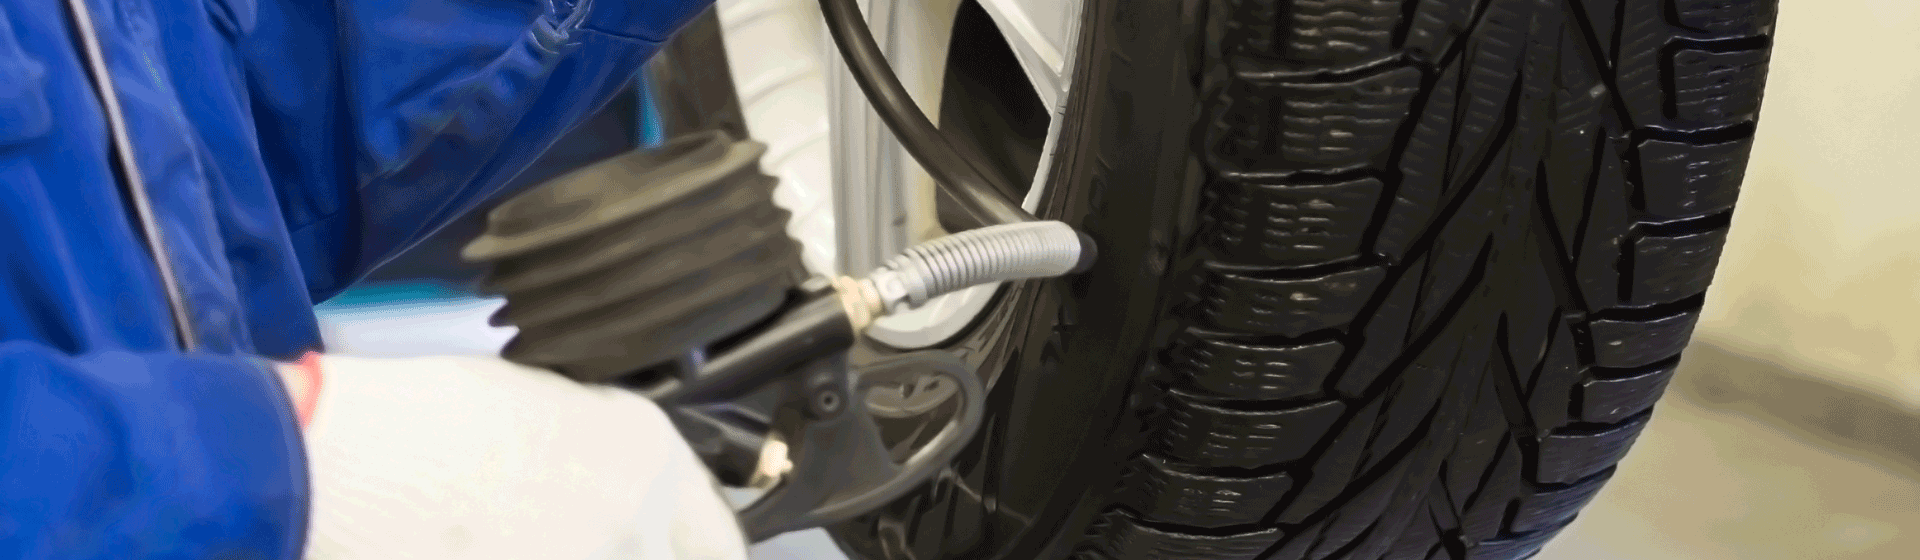 Le guide de la pression des pneus –